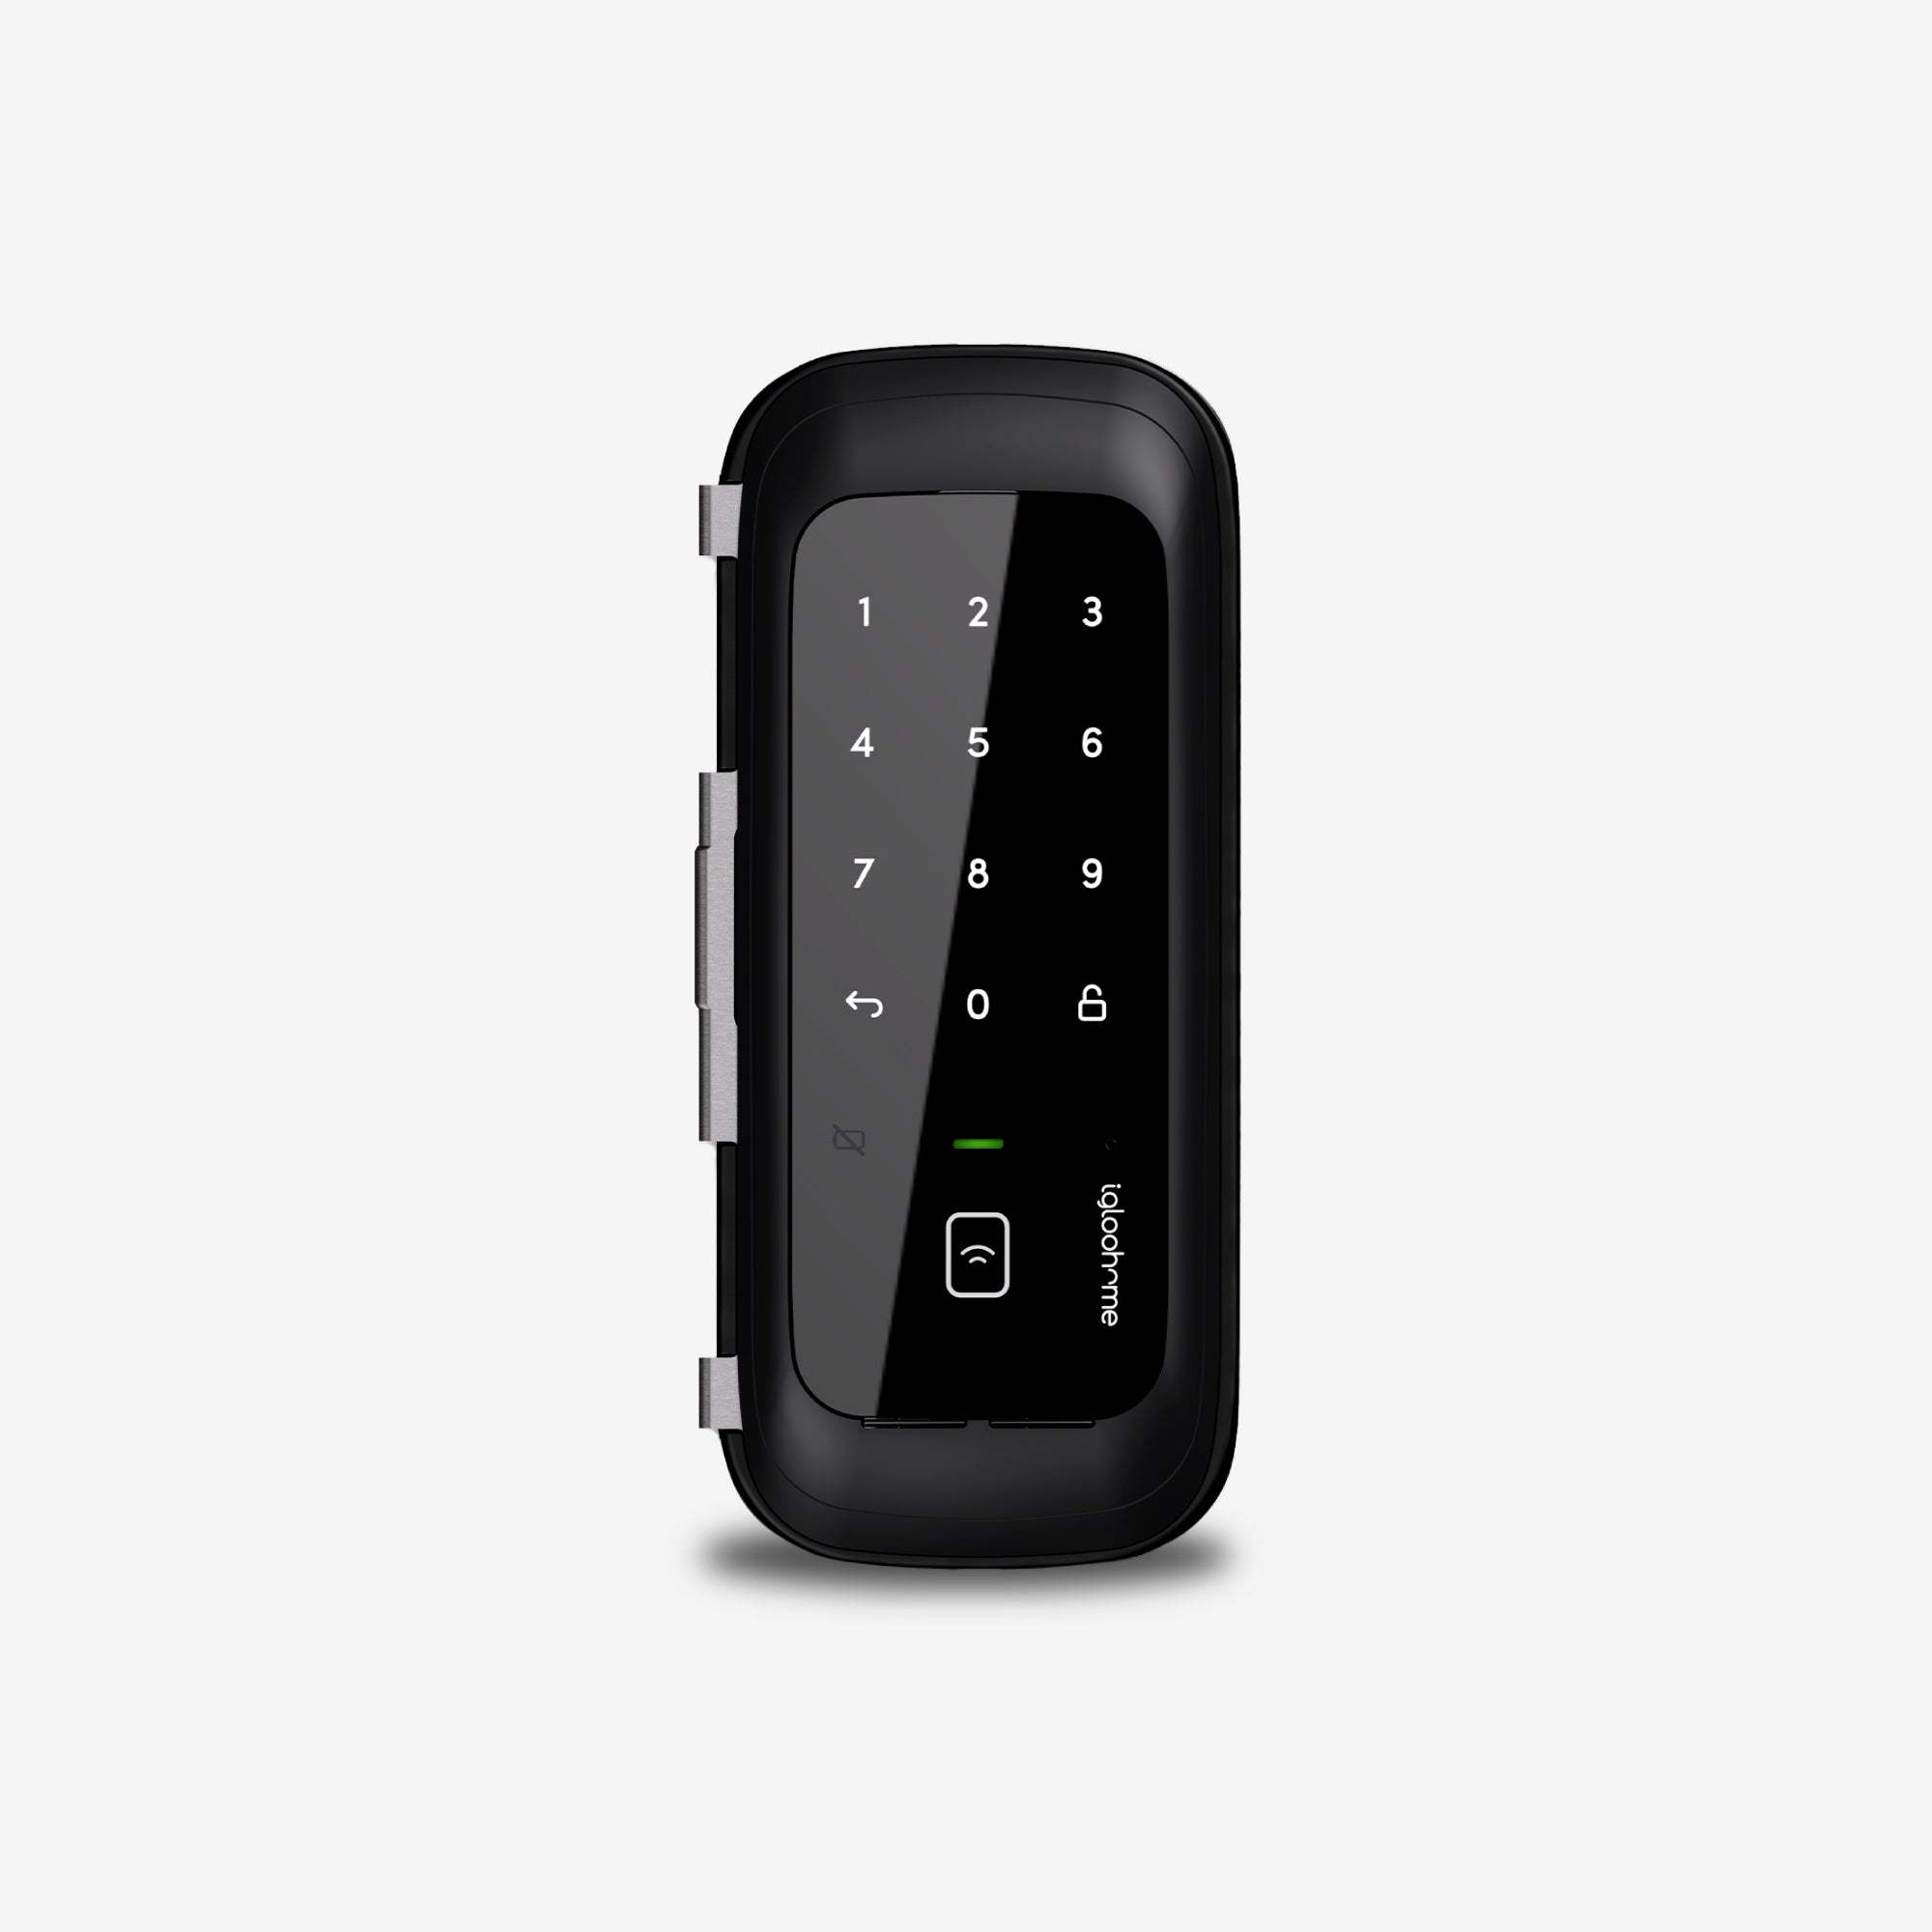 Rim Lock Glass Doors. Cerradura inteligente para oficina con Tarjeta, Bluetooth y WiFi, vía app y Clave Numérica. Unidad exterior, vista frontal.